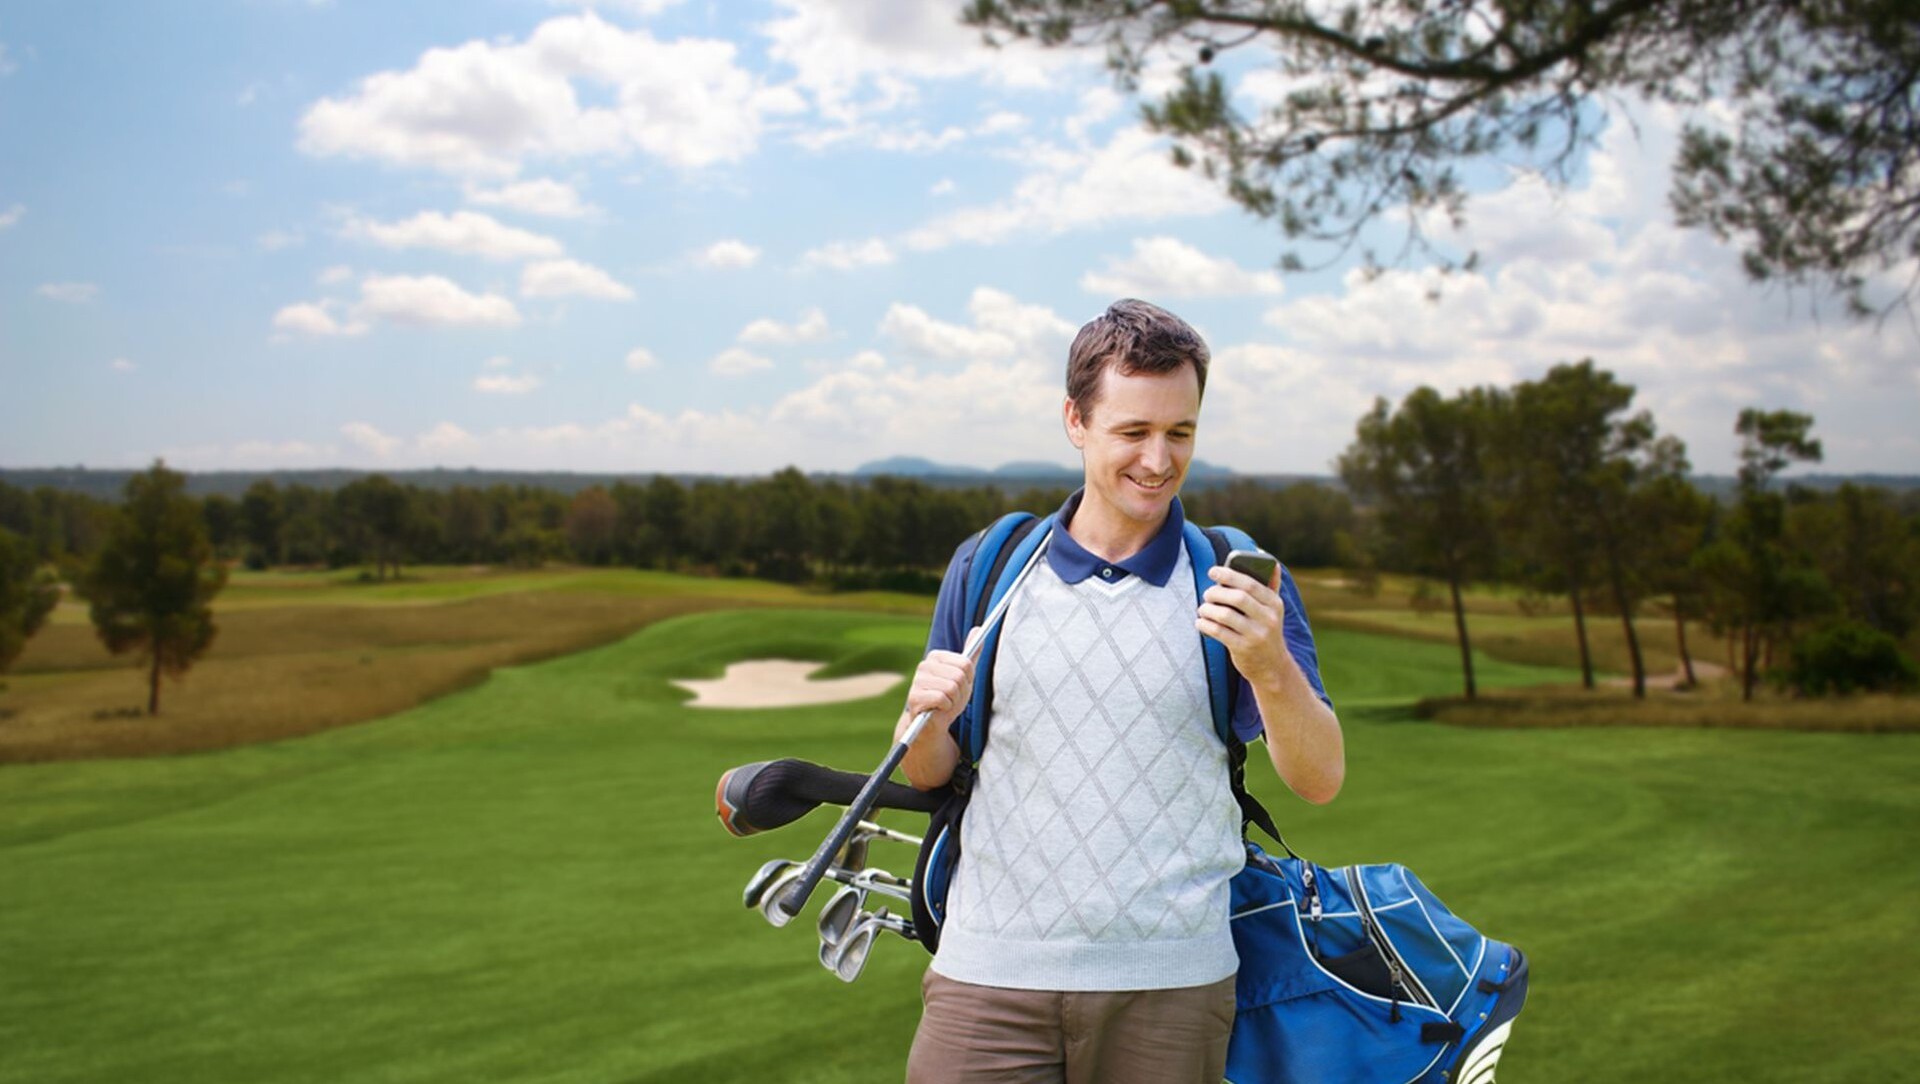 Lust auf eine Runde Golf? Verabredungs-App für Golfer